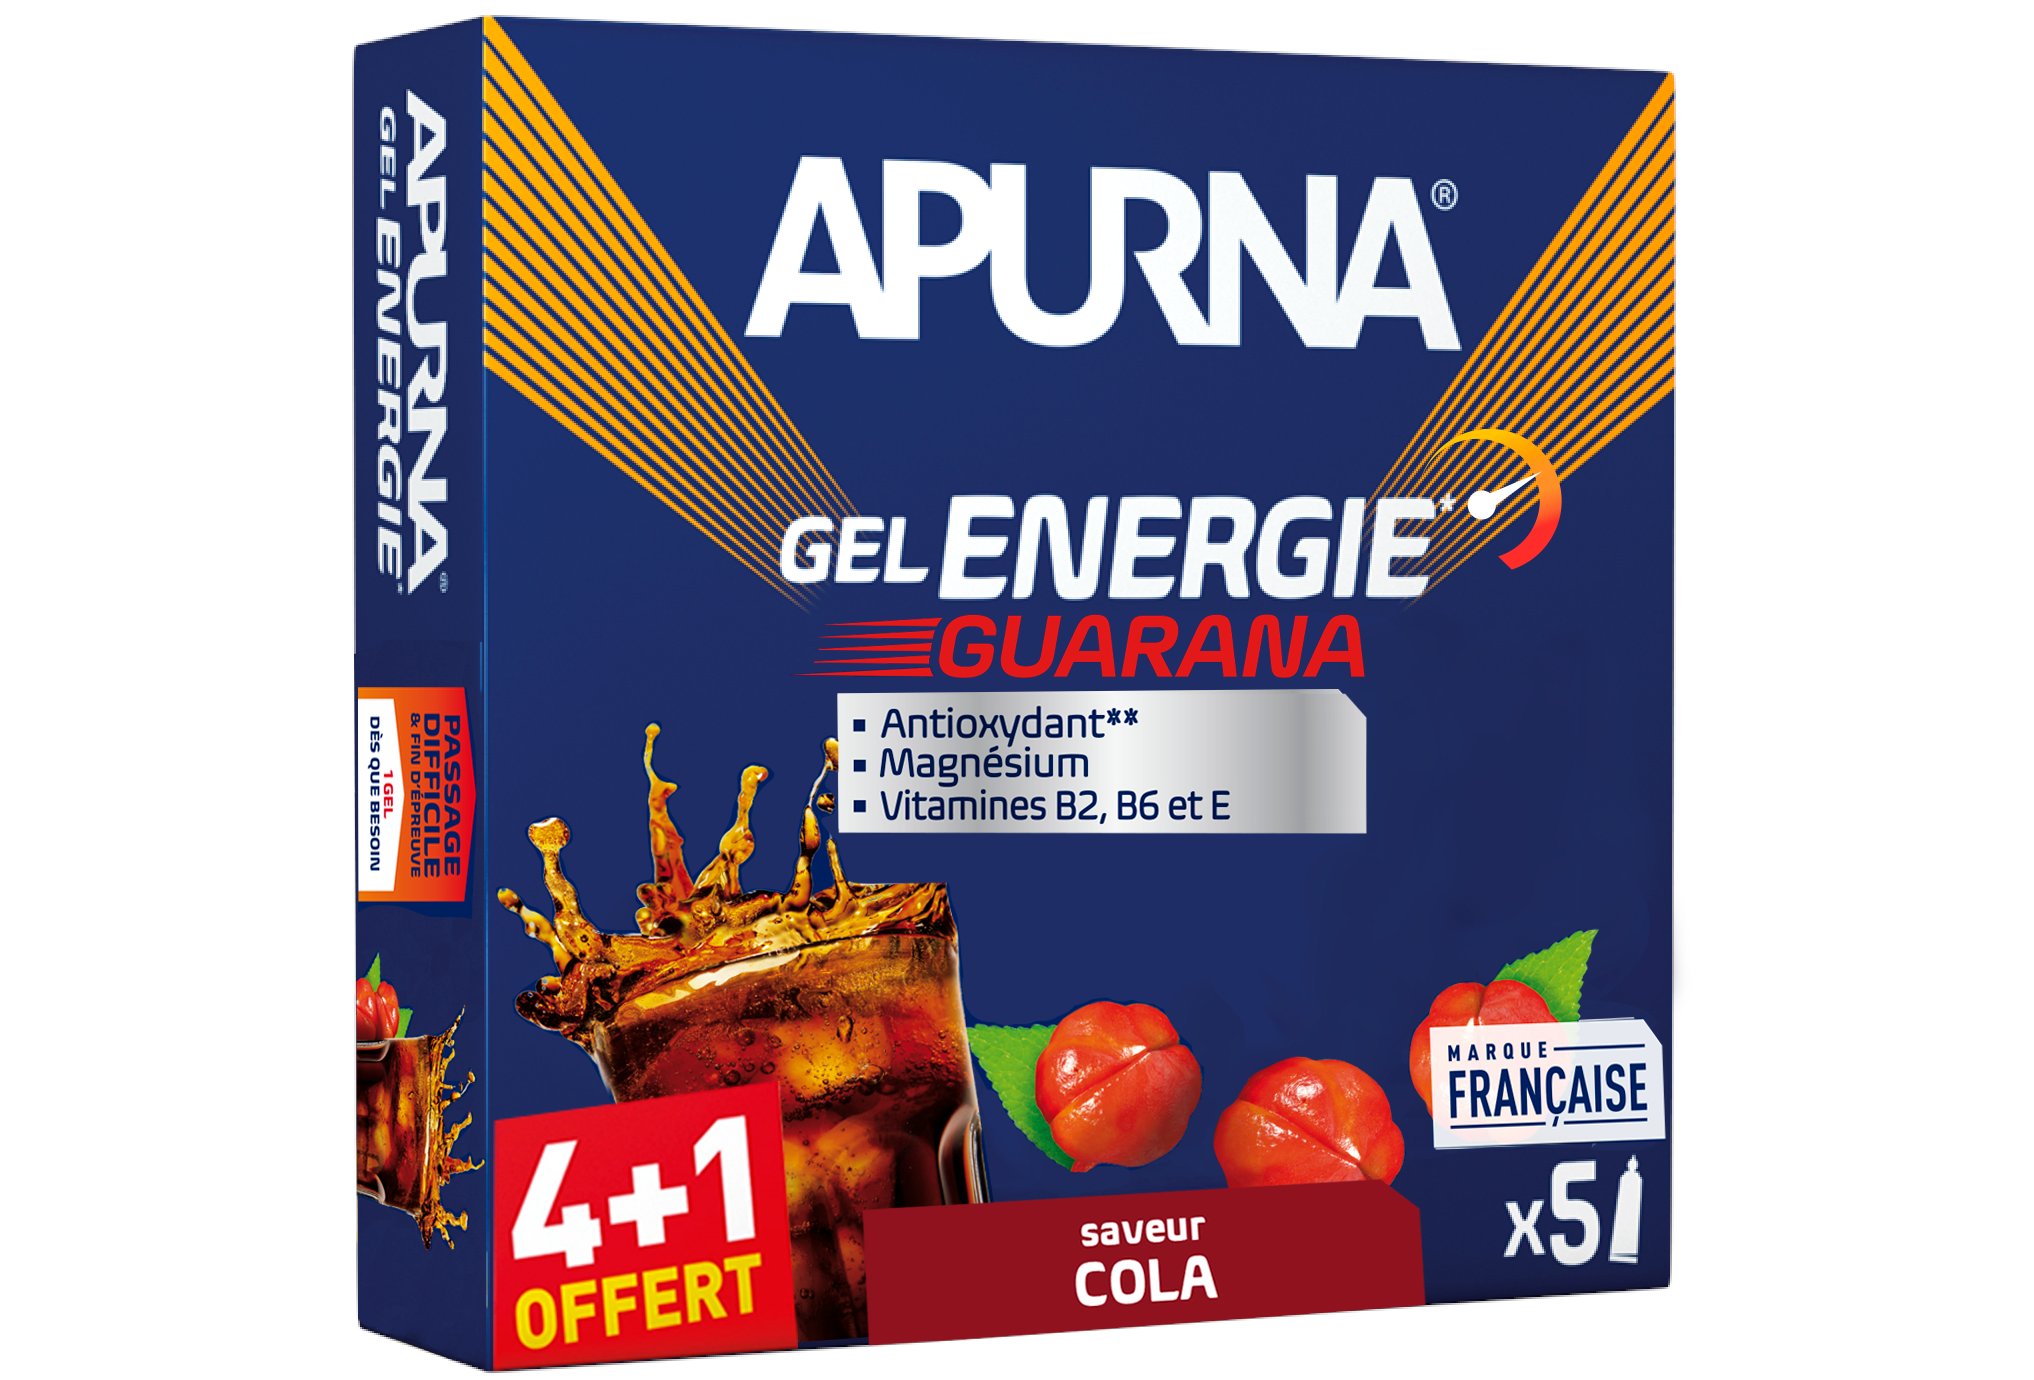 Apurna Étui gels énergie Guarana - Cola 4+1 Diététique Gels